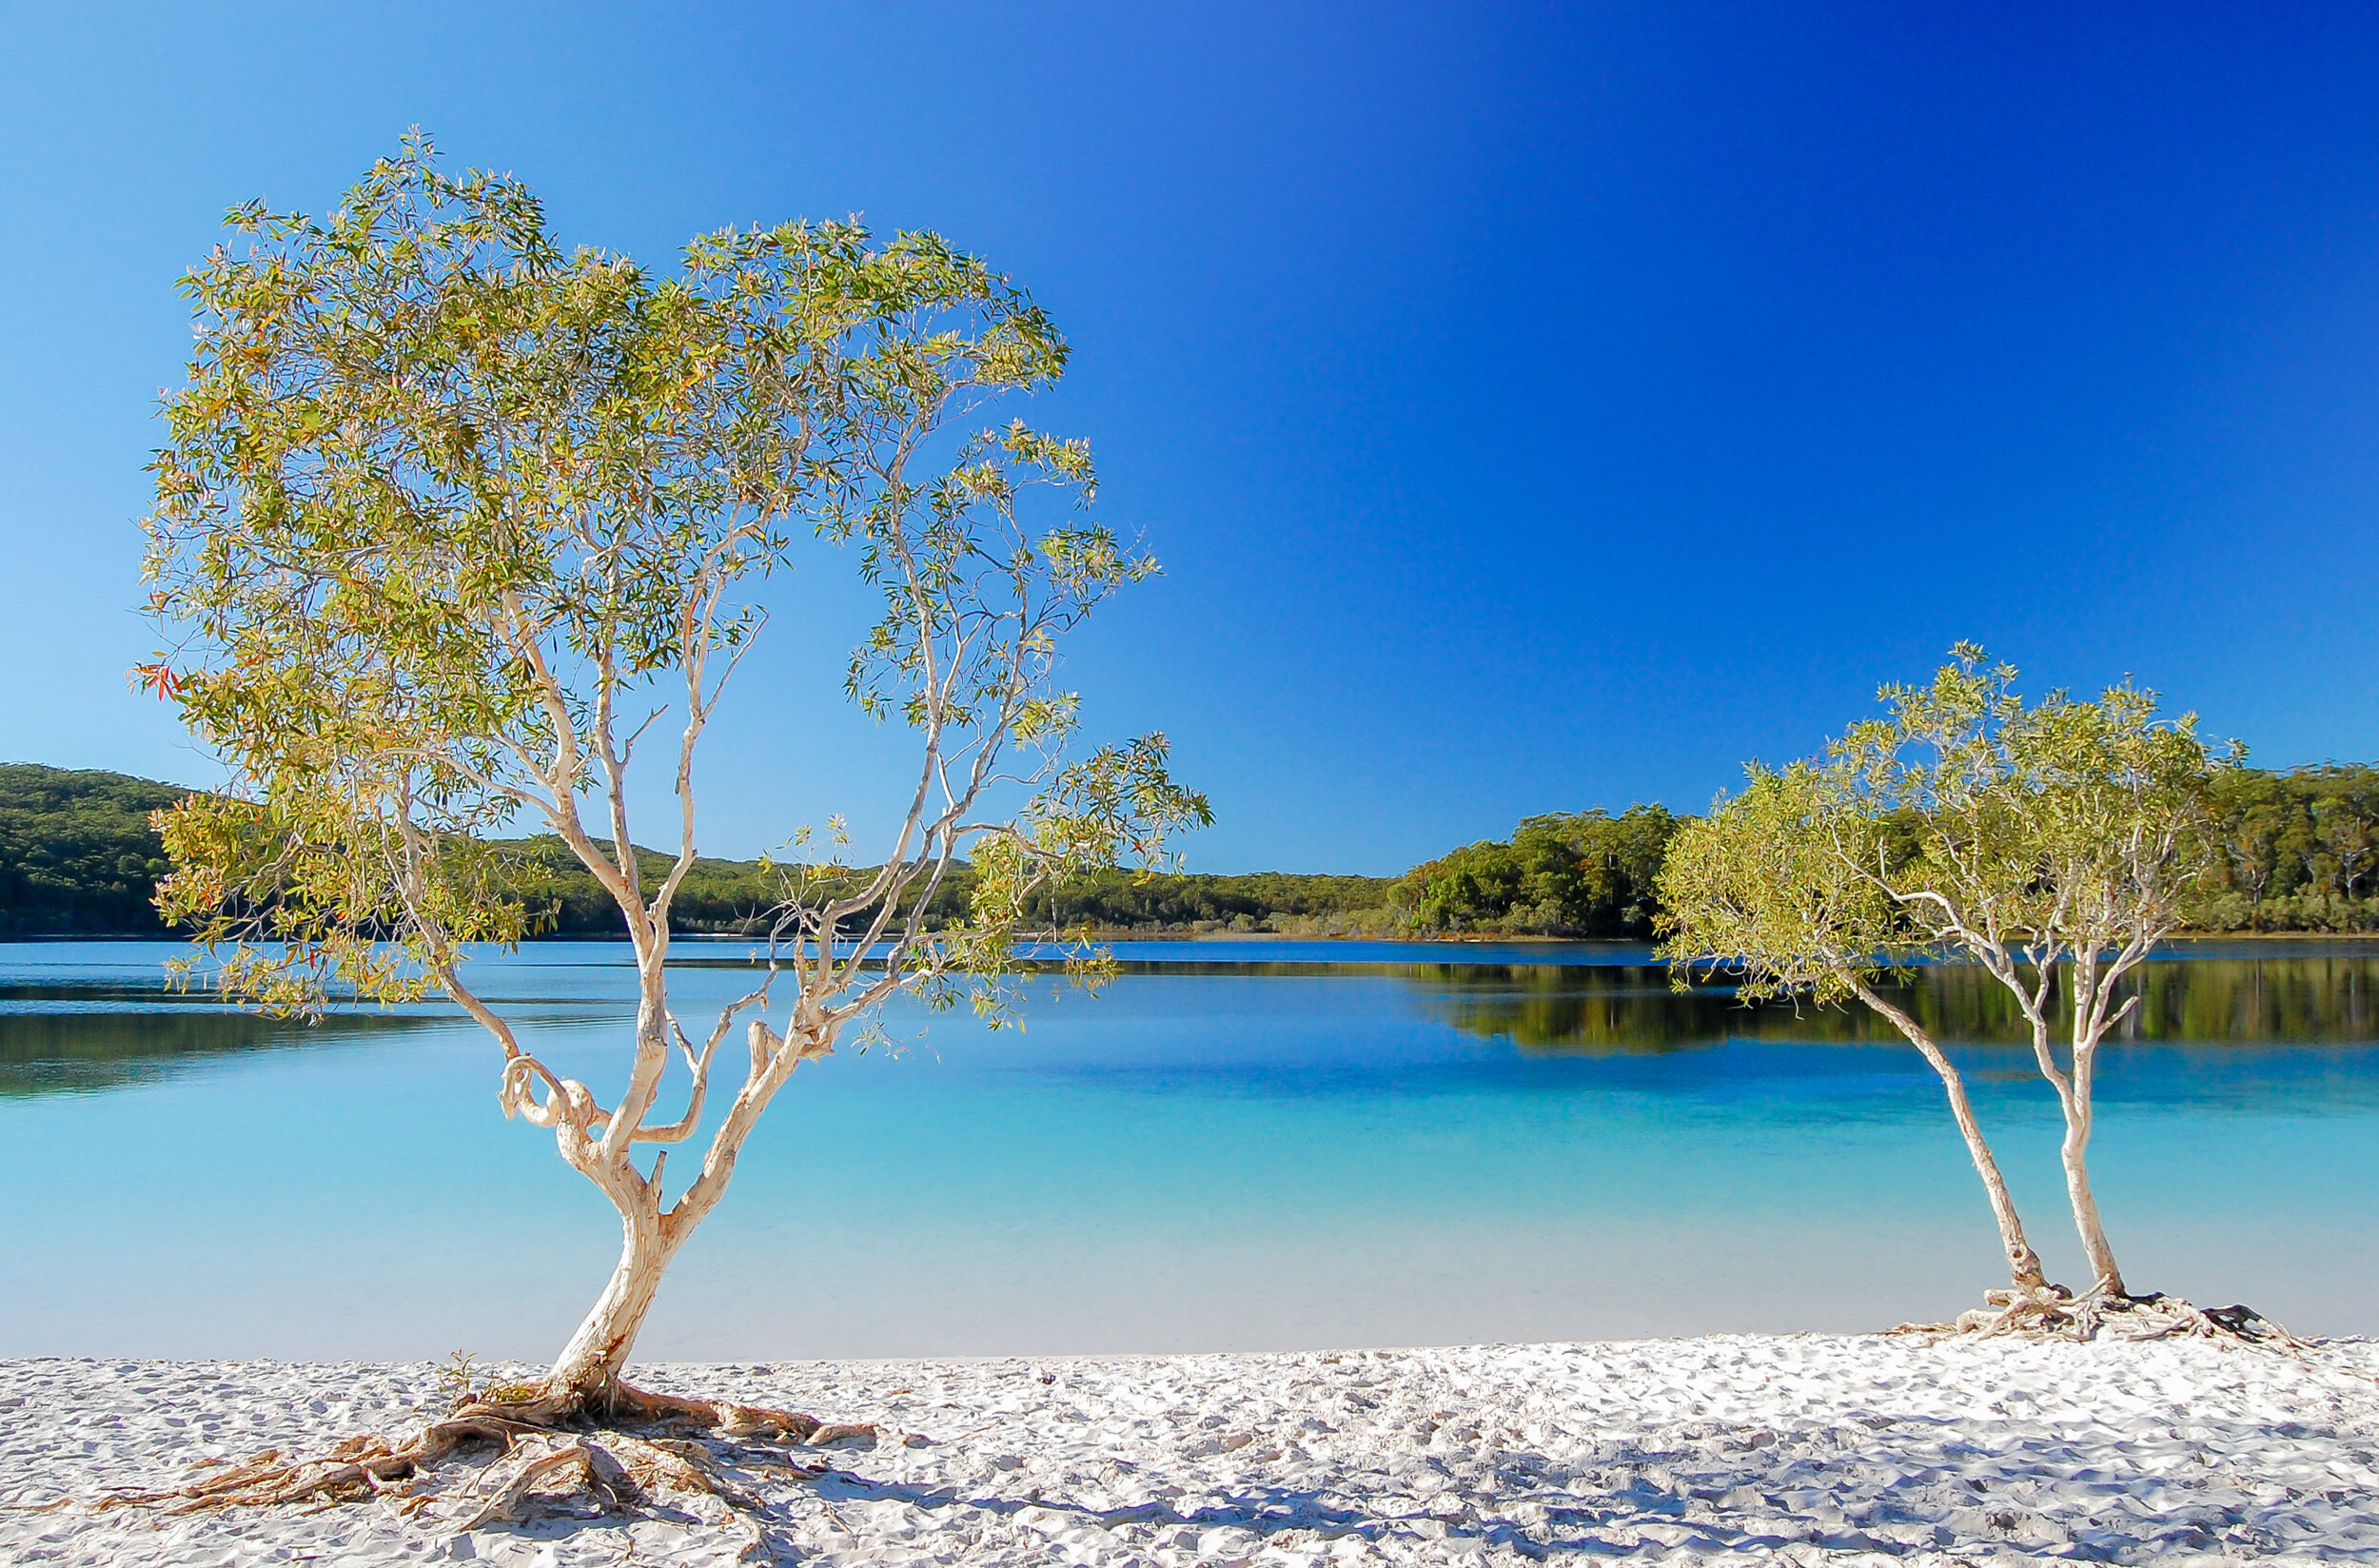 Lake Mckenzie, Fraser Island, Queensland